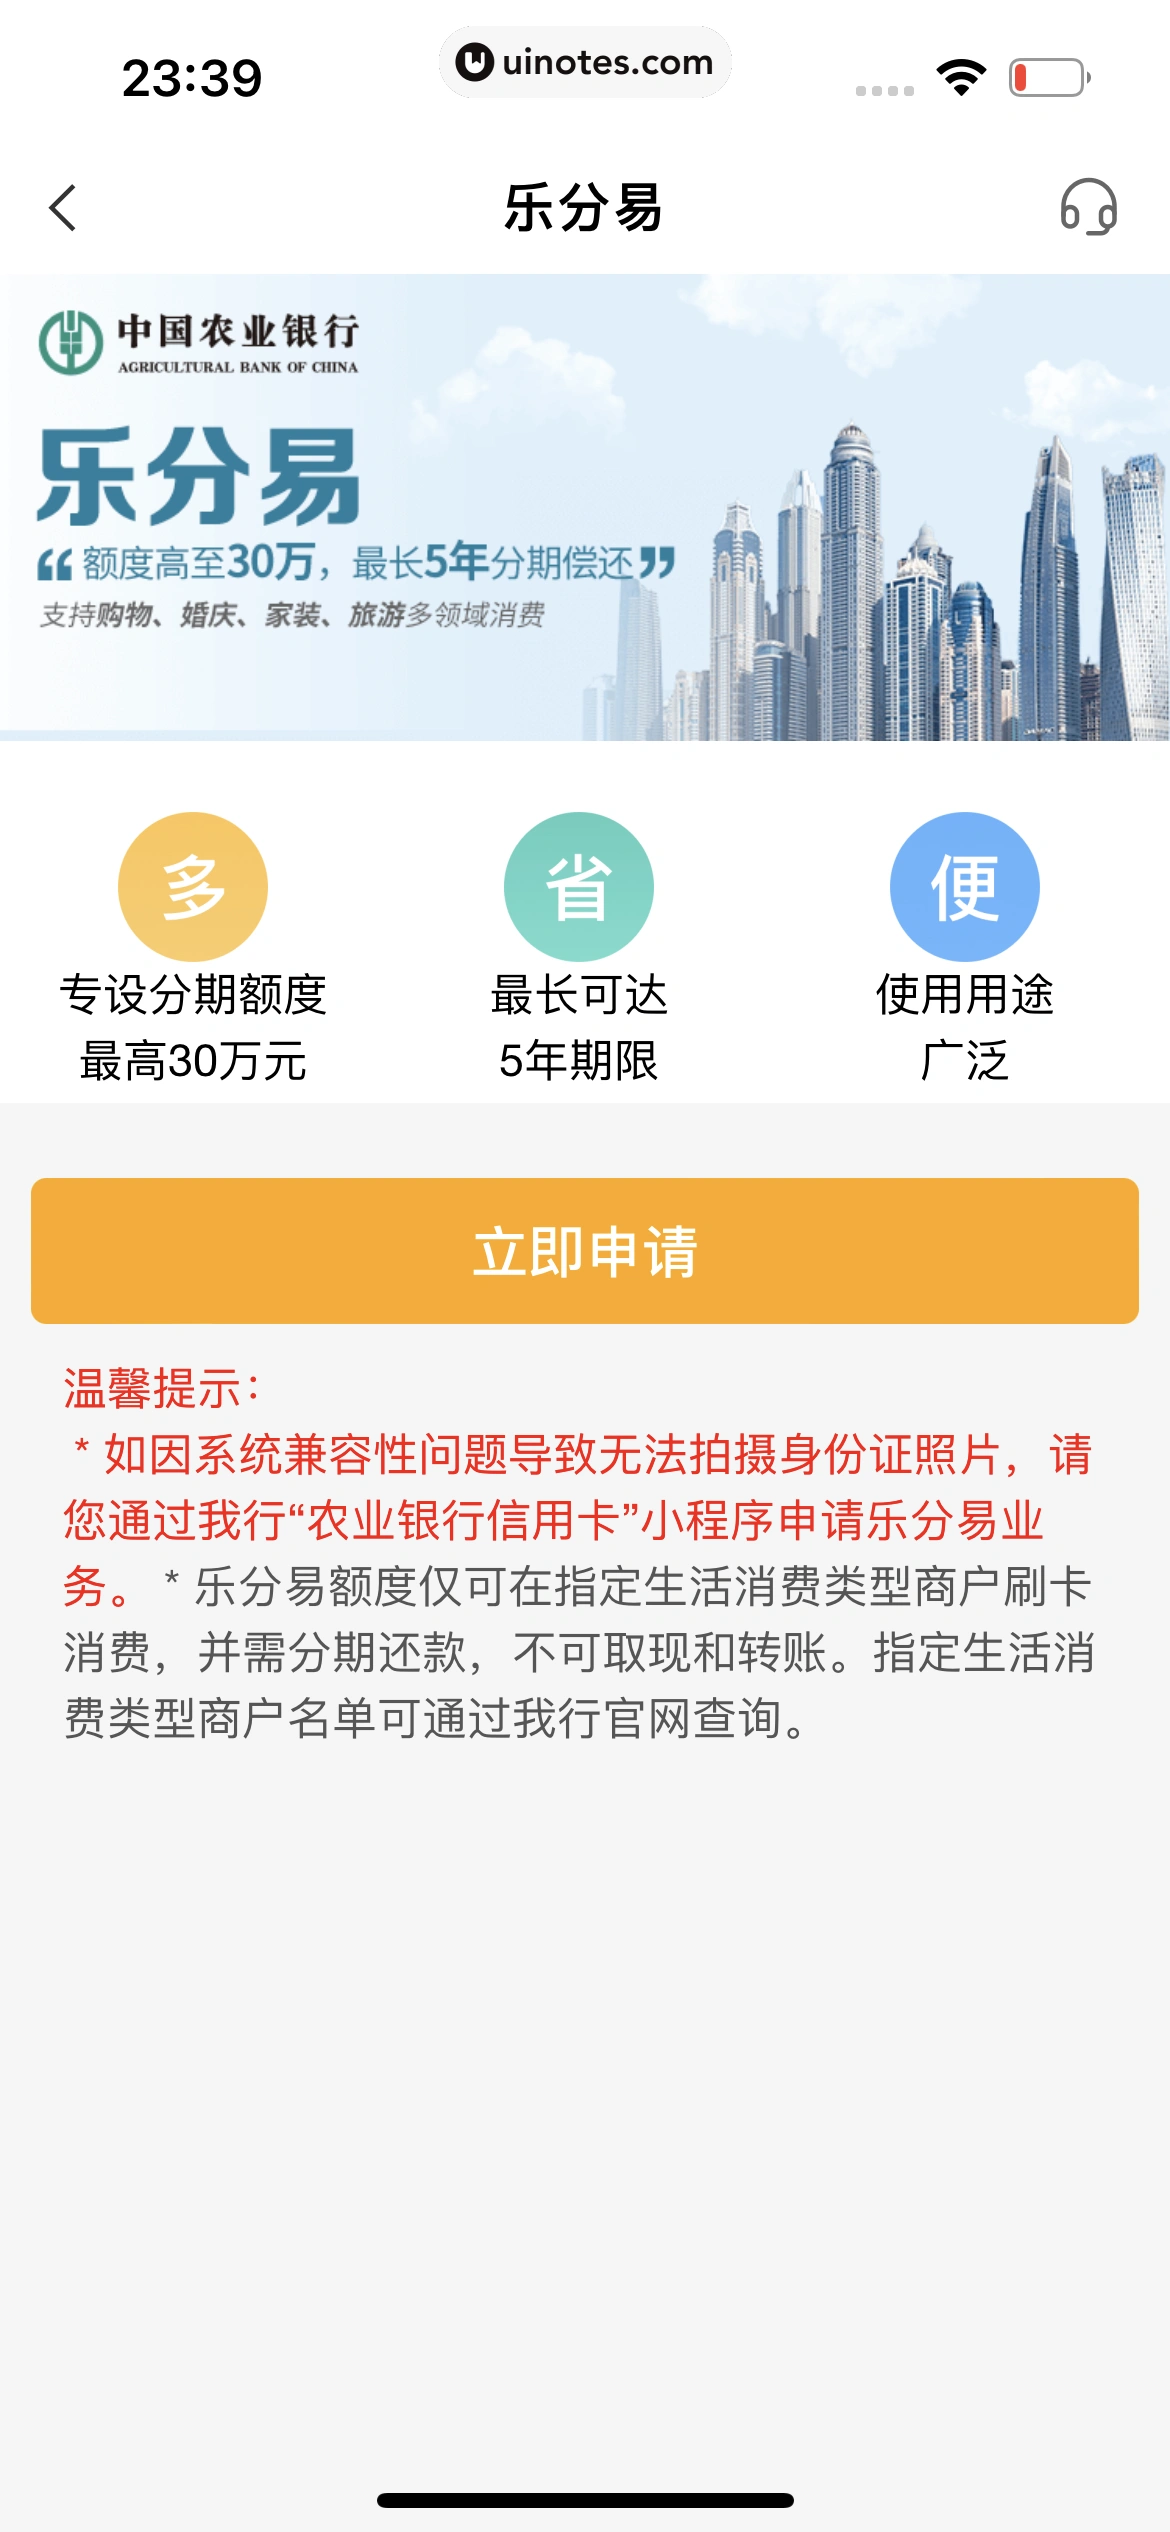 中国农业银行 App 截图 111 - UI Notes